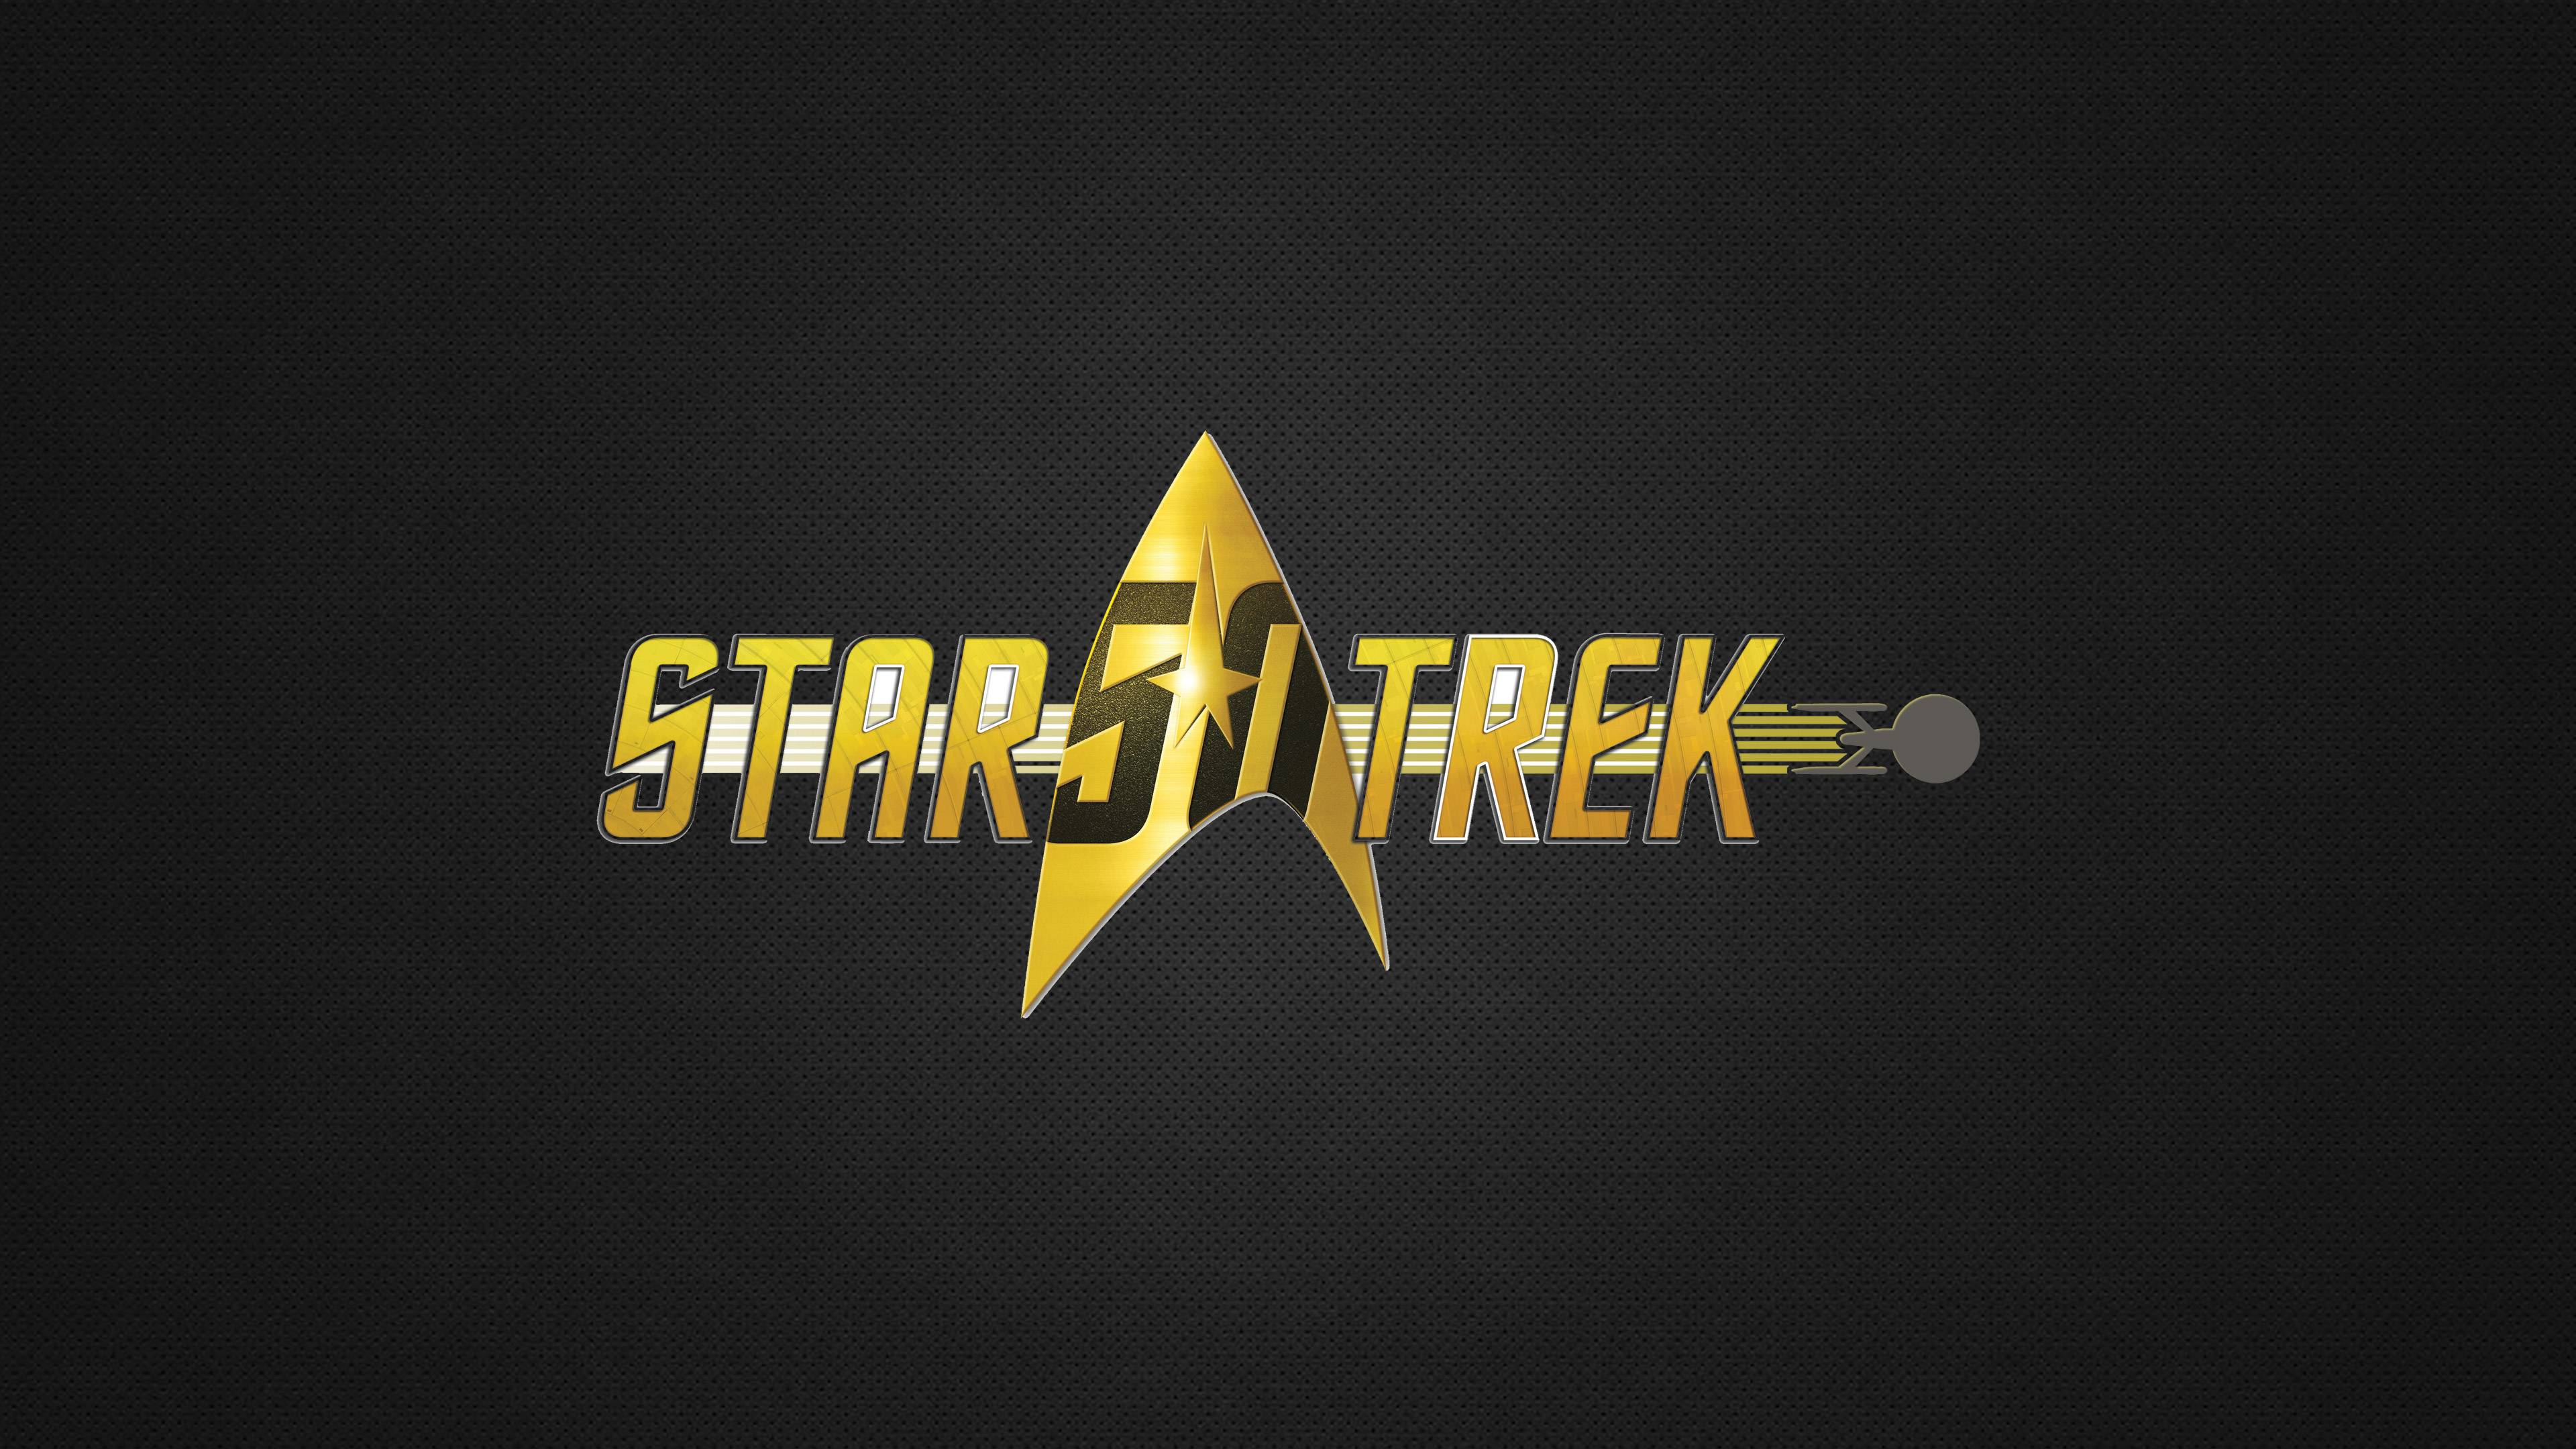 star trek 50th anniversary 1536364245 - Star Trek 50th Anniversary - star trek beyond wallpapers, movies wallpapers, logo wallpapers, 2016 movies wallpapers